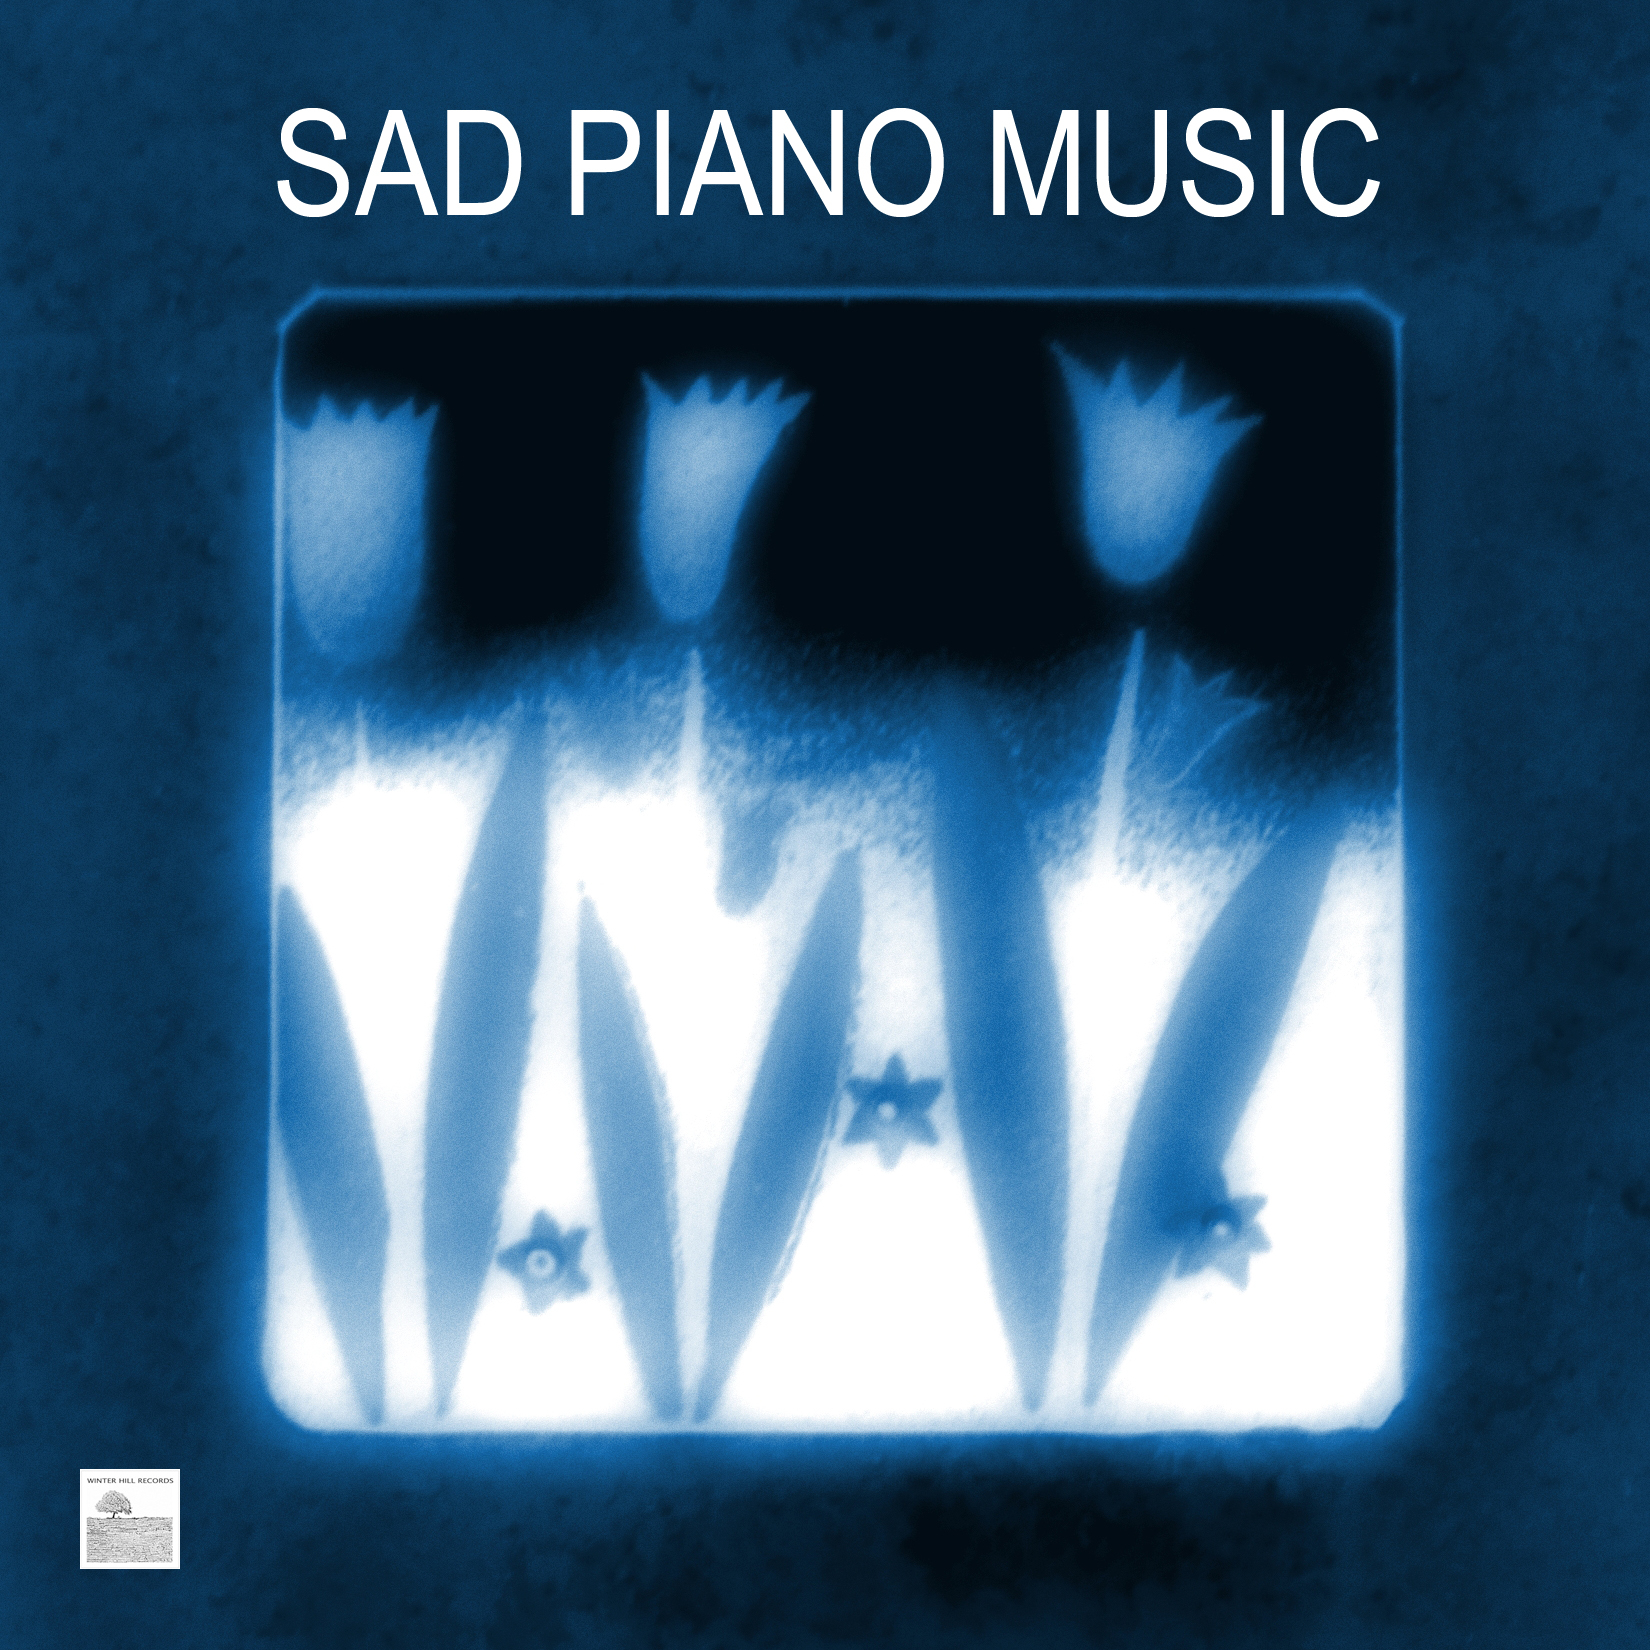 The Sad Piano